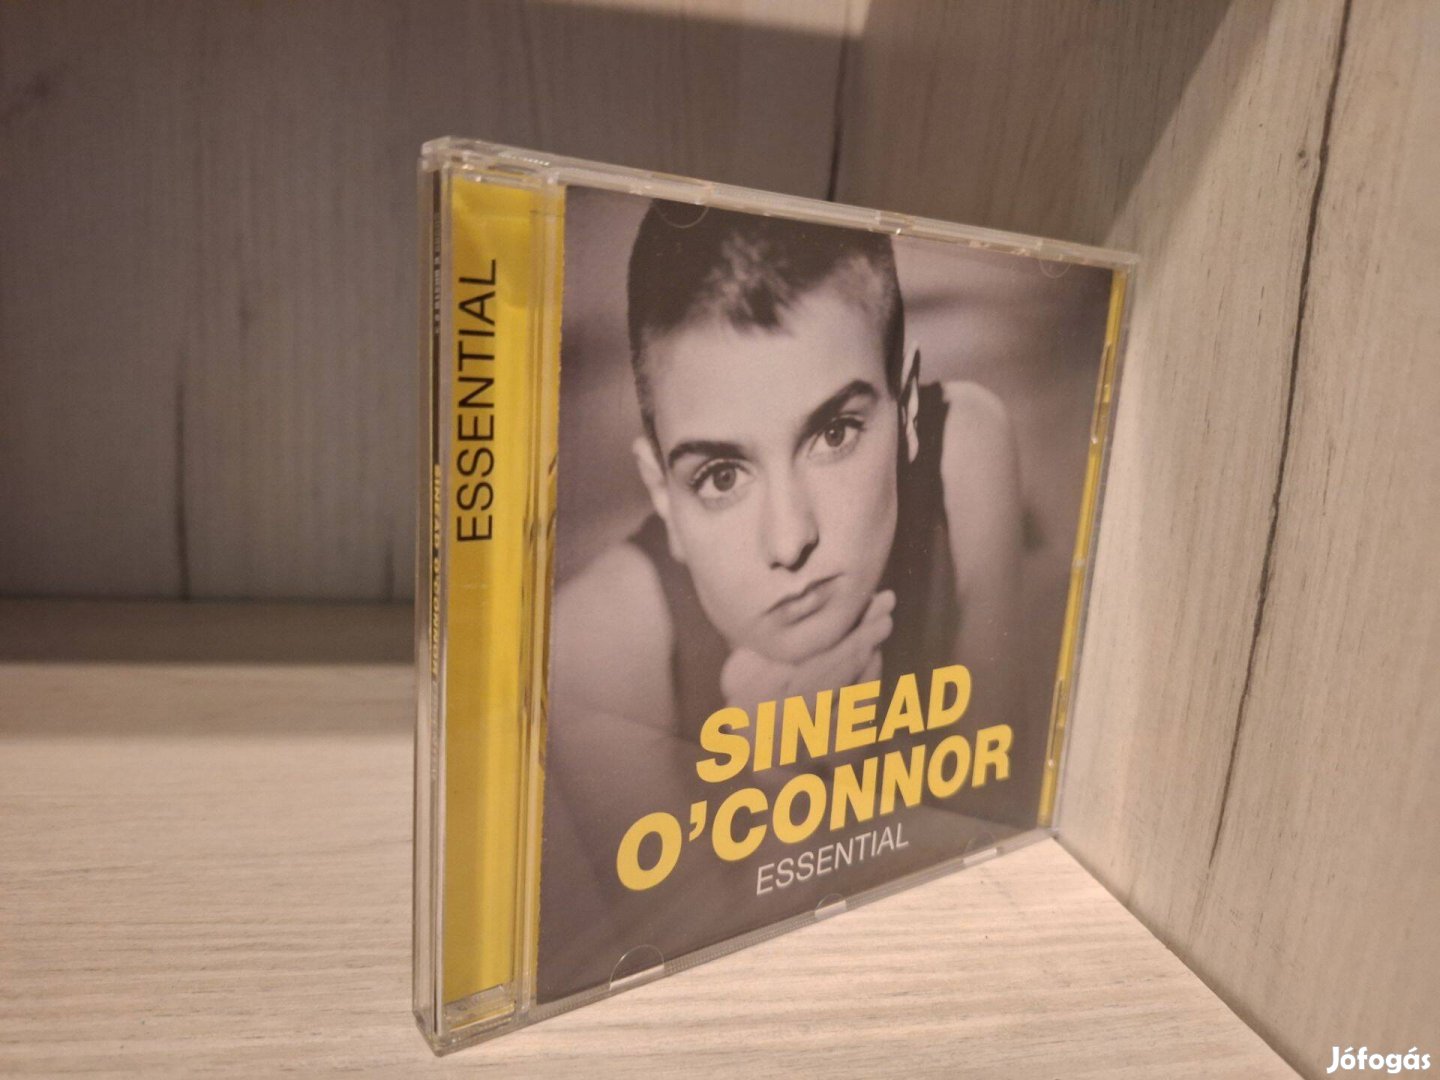 Sinead O'Connor - Essential CD